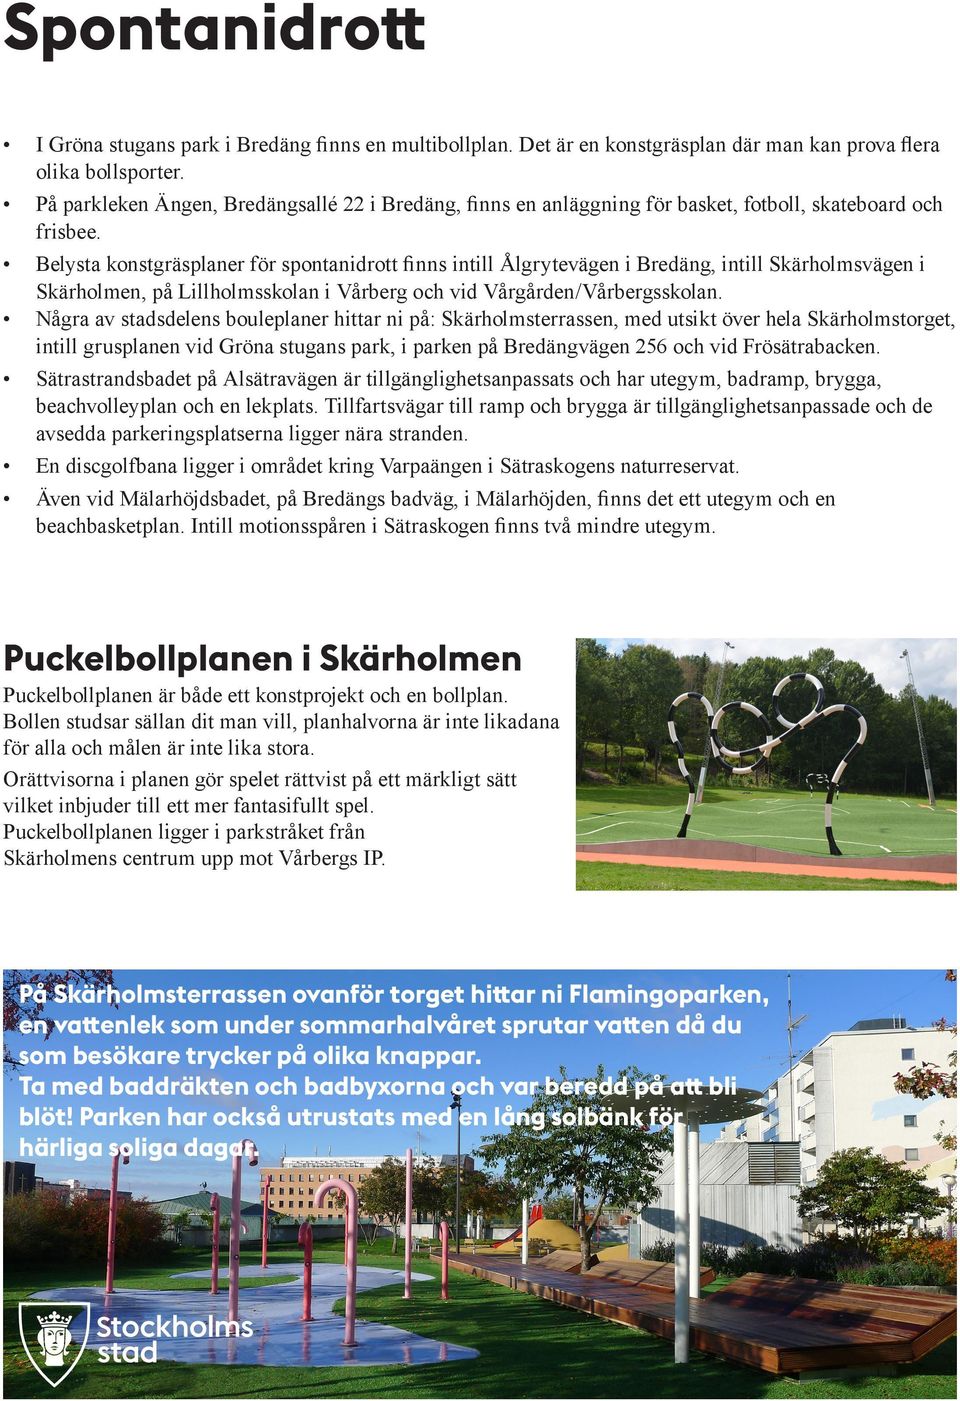 Belysta konstgräsplaner för spontanidrott finns intill Ålgrytevägen i Bredäng, intill Skärholmsvägen i Skärholmen, på Lillholmsskolan i Vårberg och vid Vårgården/Vårbergsskolan.